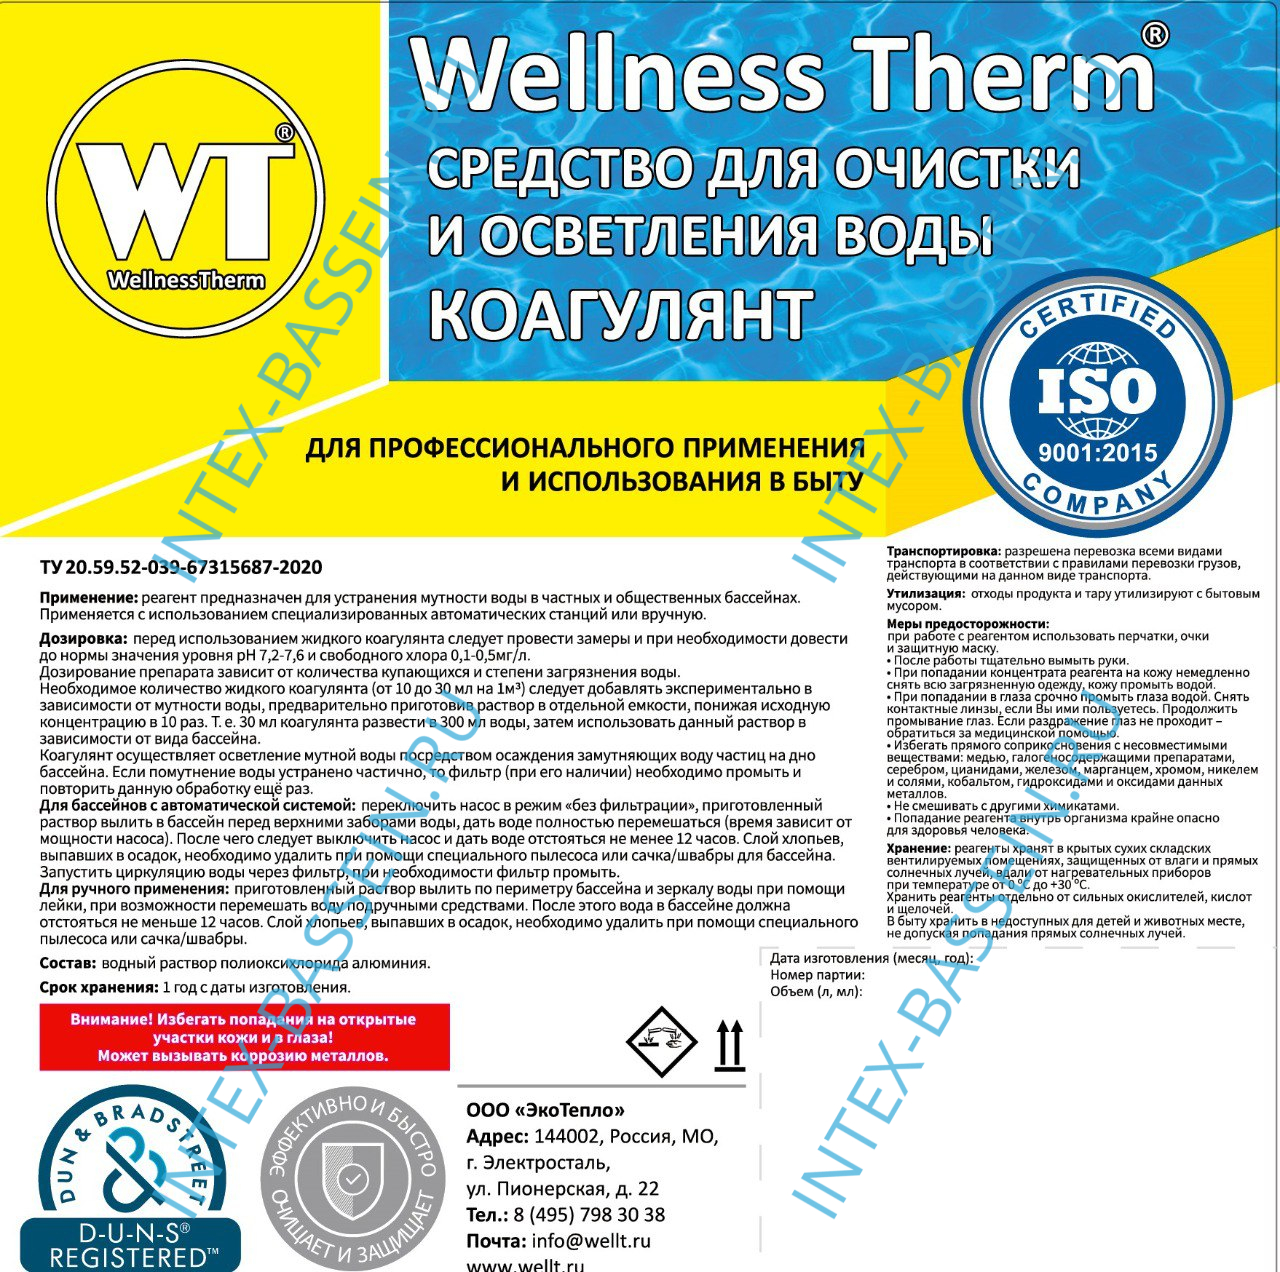 Коагулянт Wellness Therm (средство для очистки и осветления воды) 10 л, арт. 312606